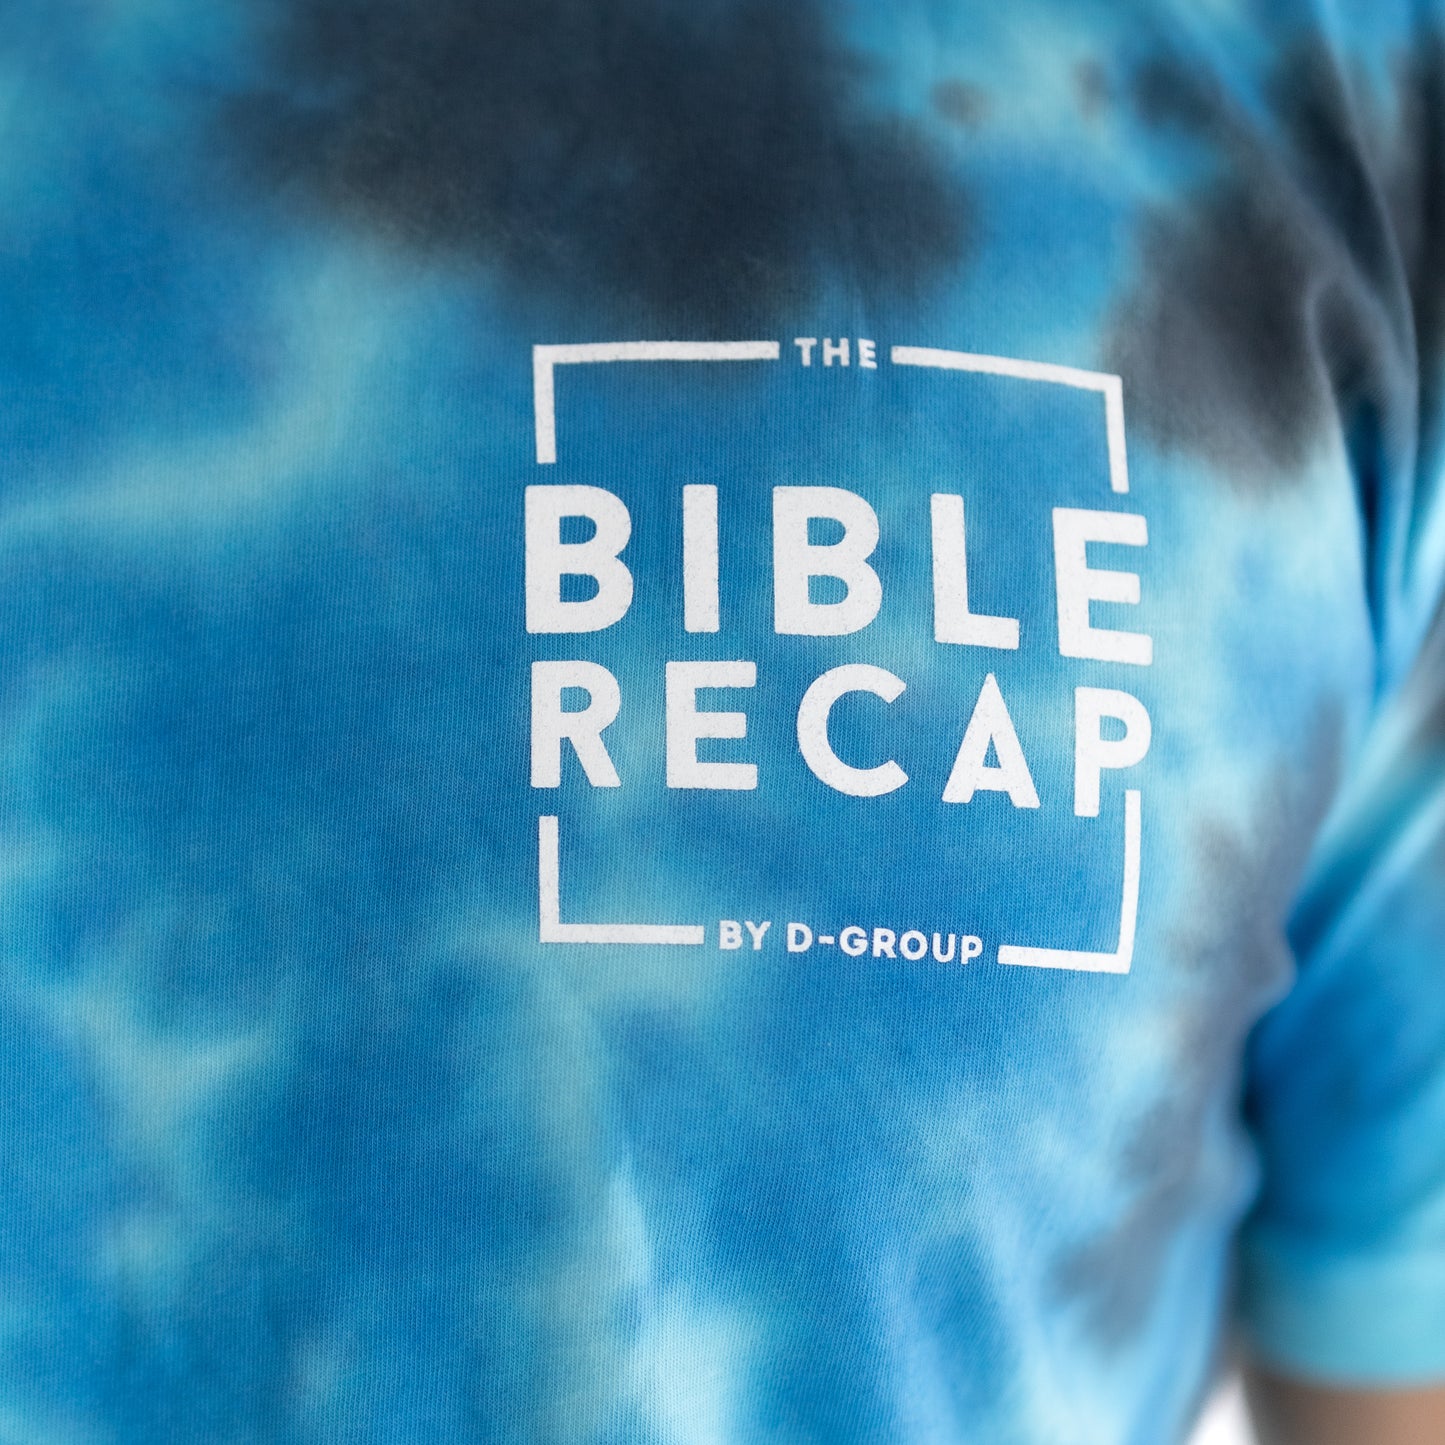 The Bible Recap Tie-Dye T-Shirt